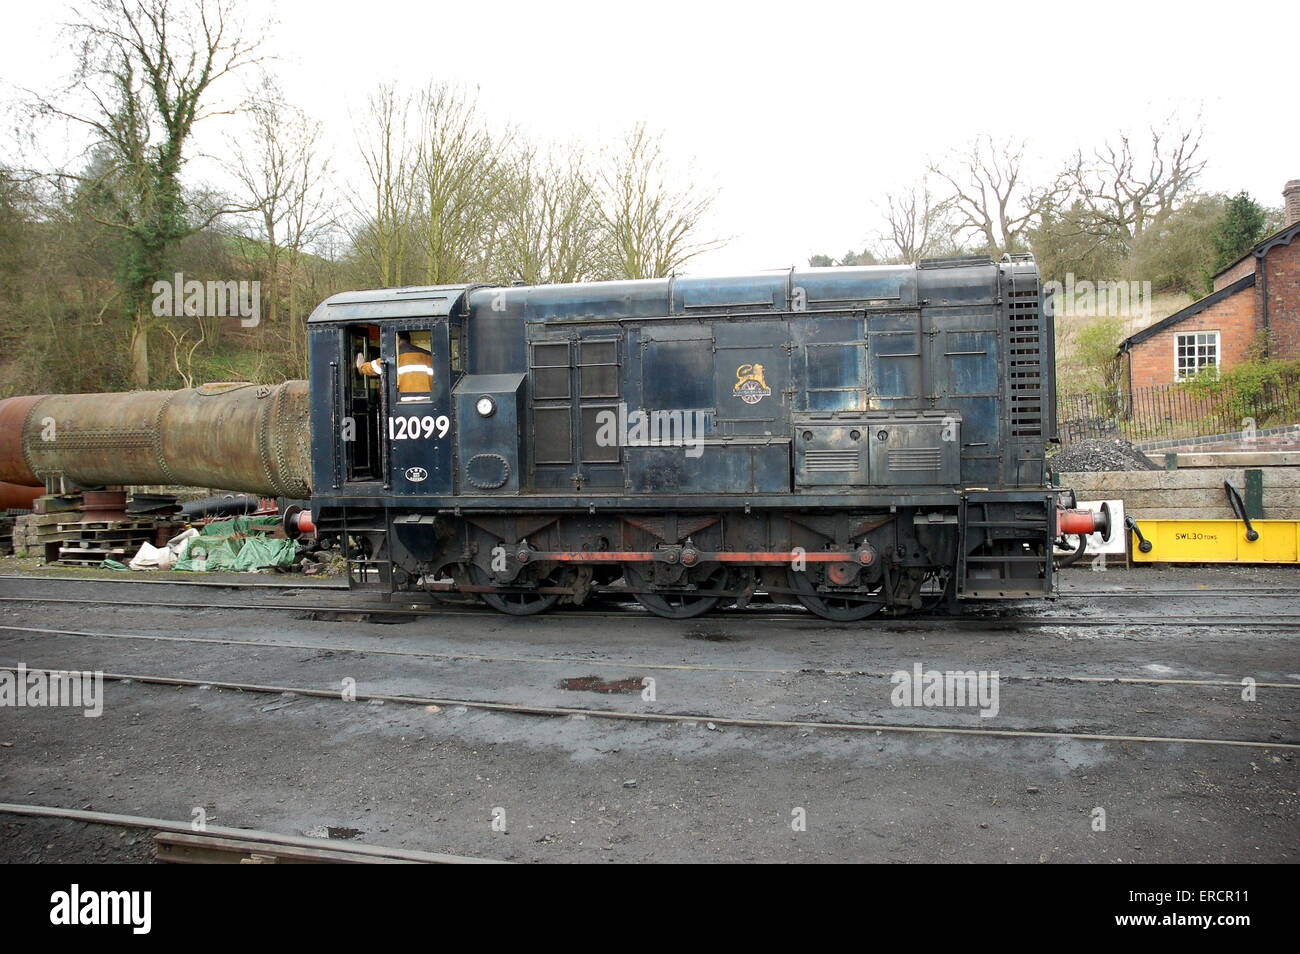 British Railways Class Locomotive no 11 12099 semblent ici à Bridgnorth sur la vallée de la Severn. Banque D'Images